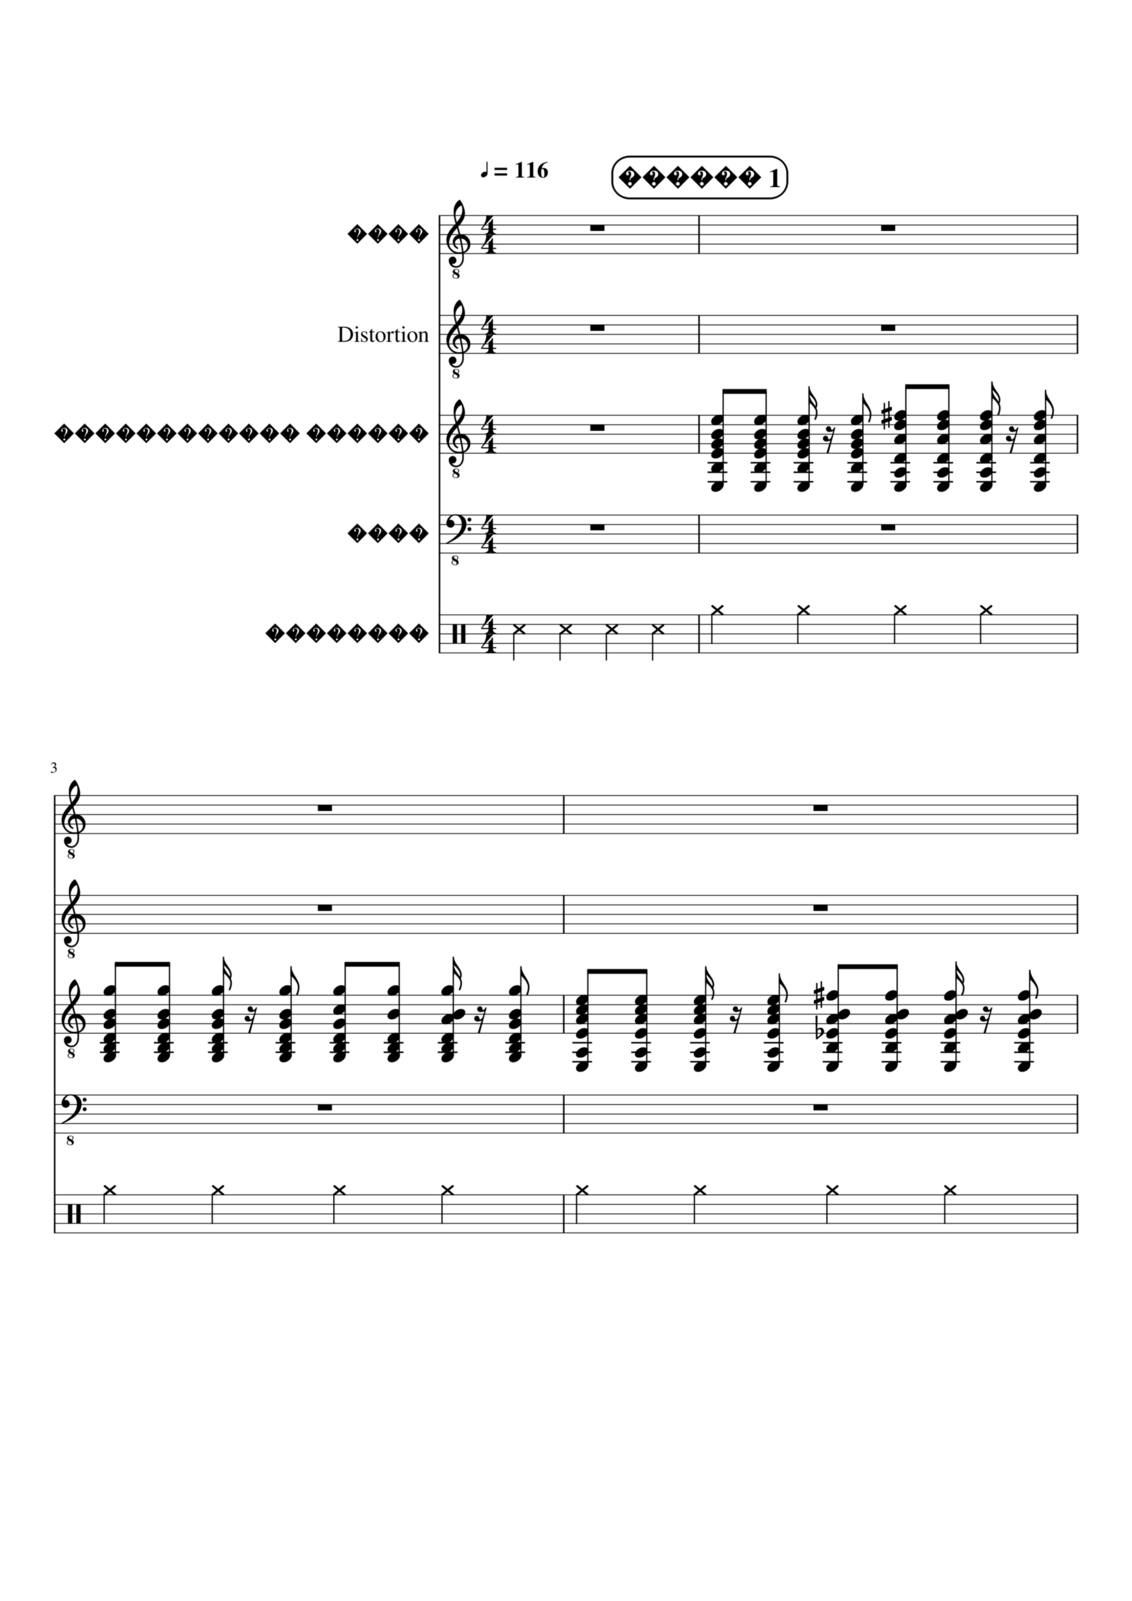 Vechnaya molodost slide, Image 1